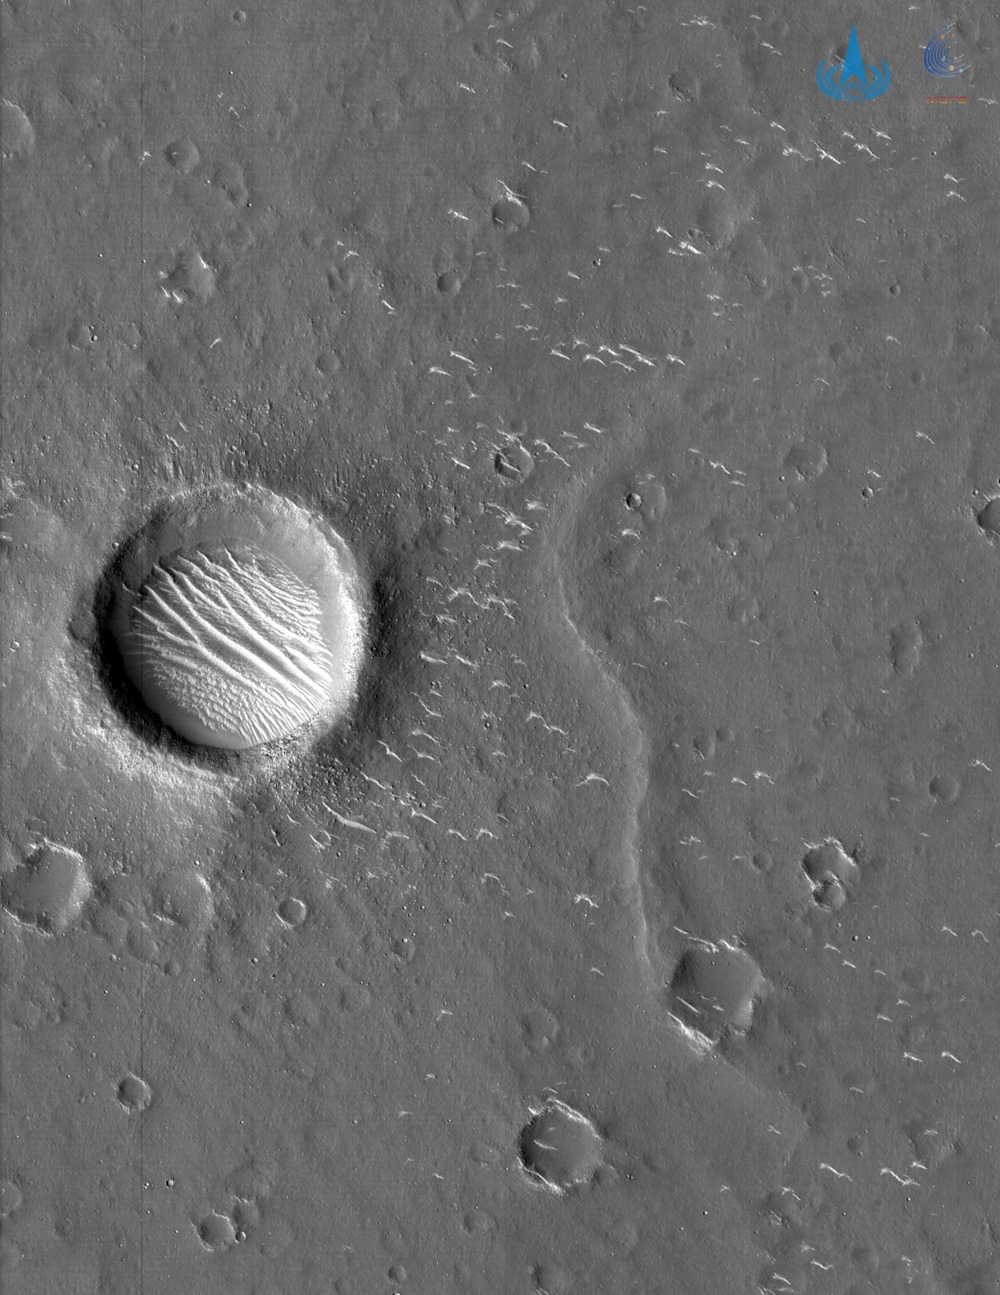 Utopia Planitia 1 21